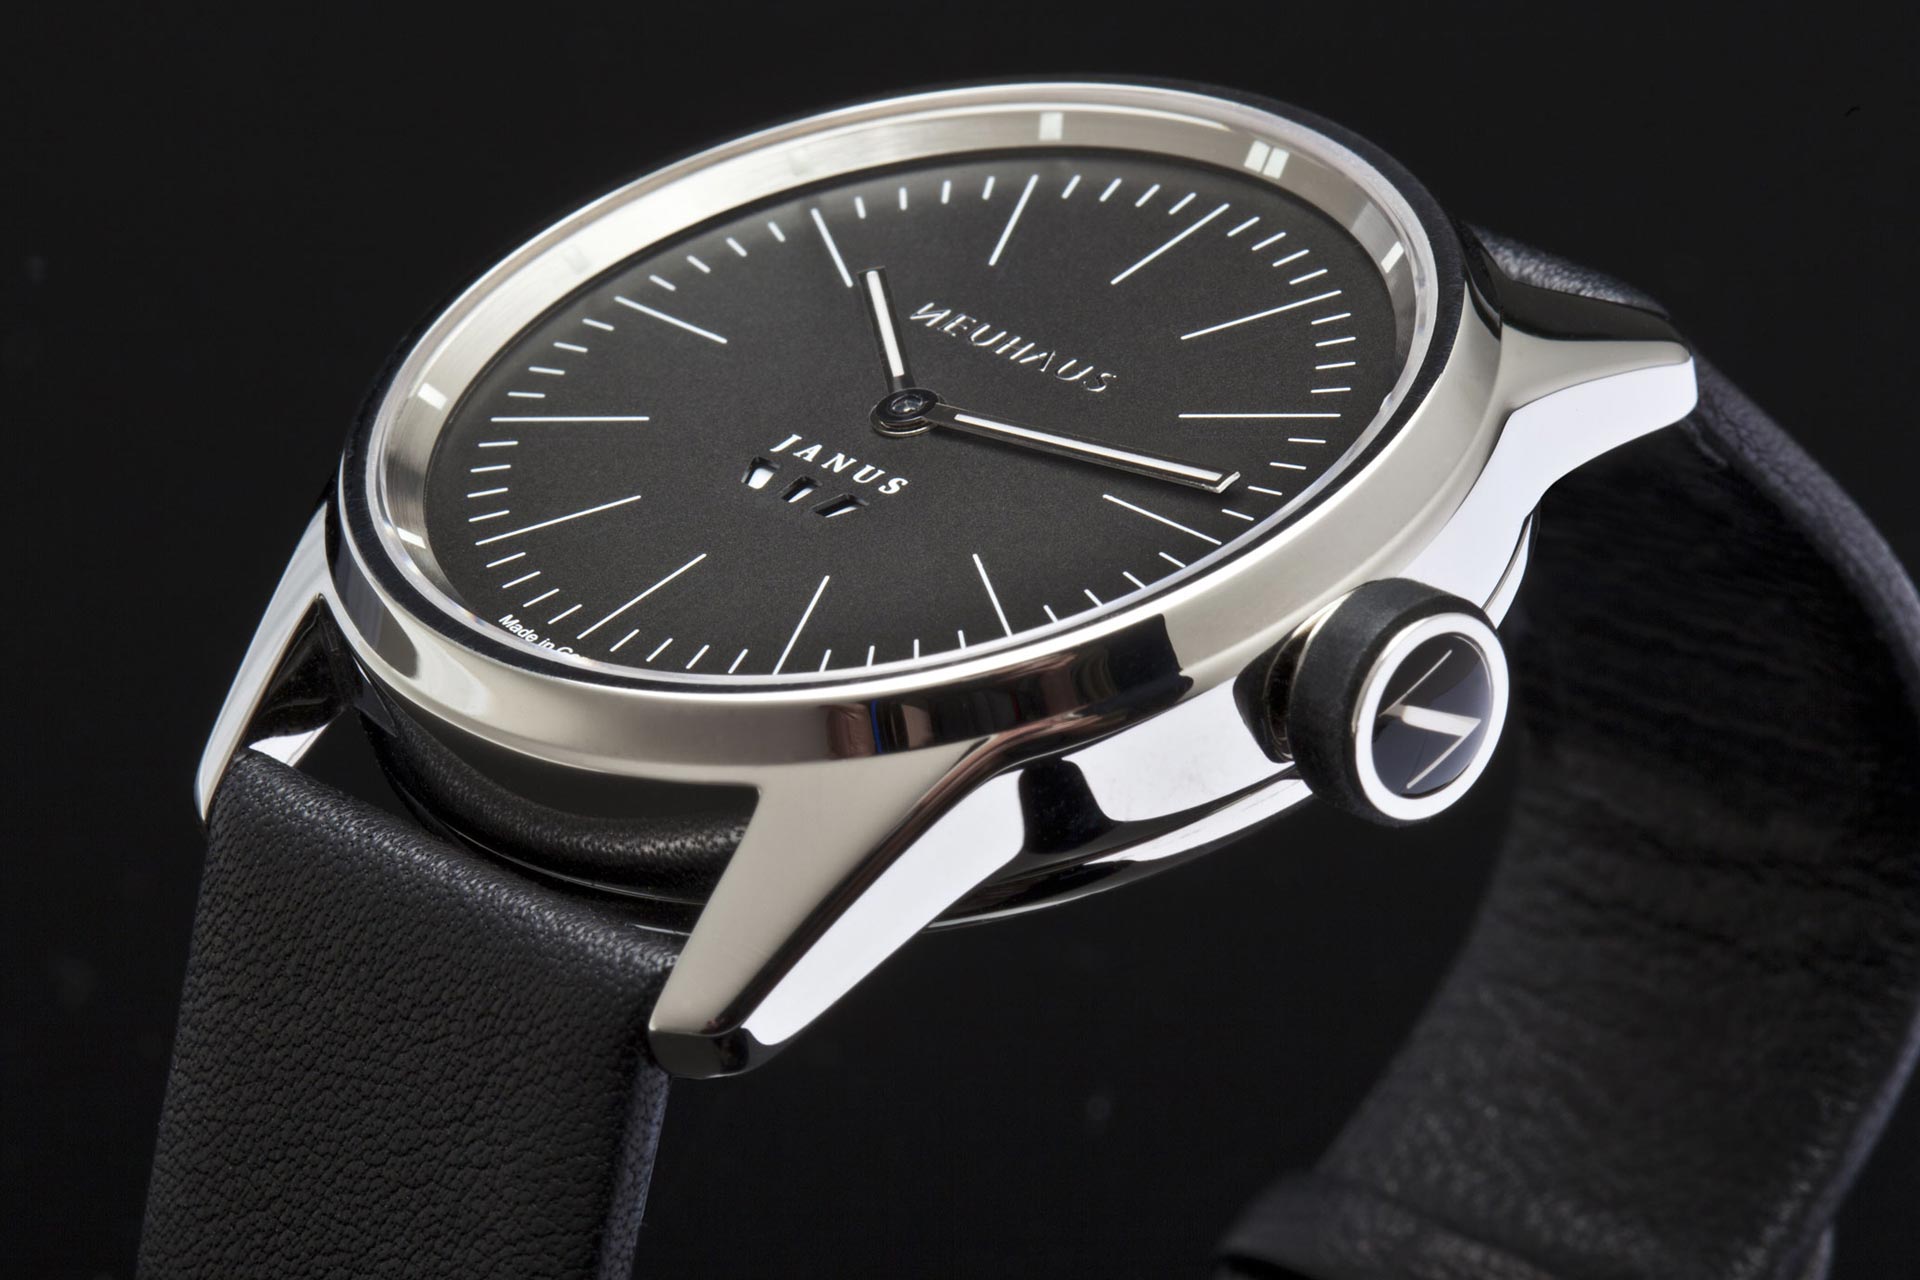 Zweizeigeruhr von NEUHAUS Timepieces, Modell JANUS minimal,  mobil schraeg